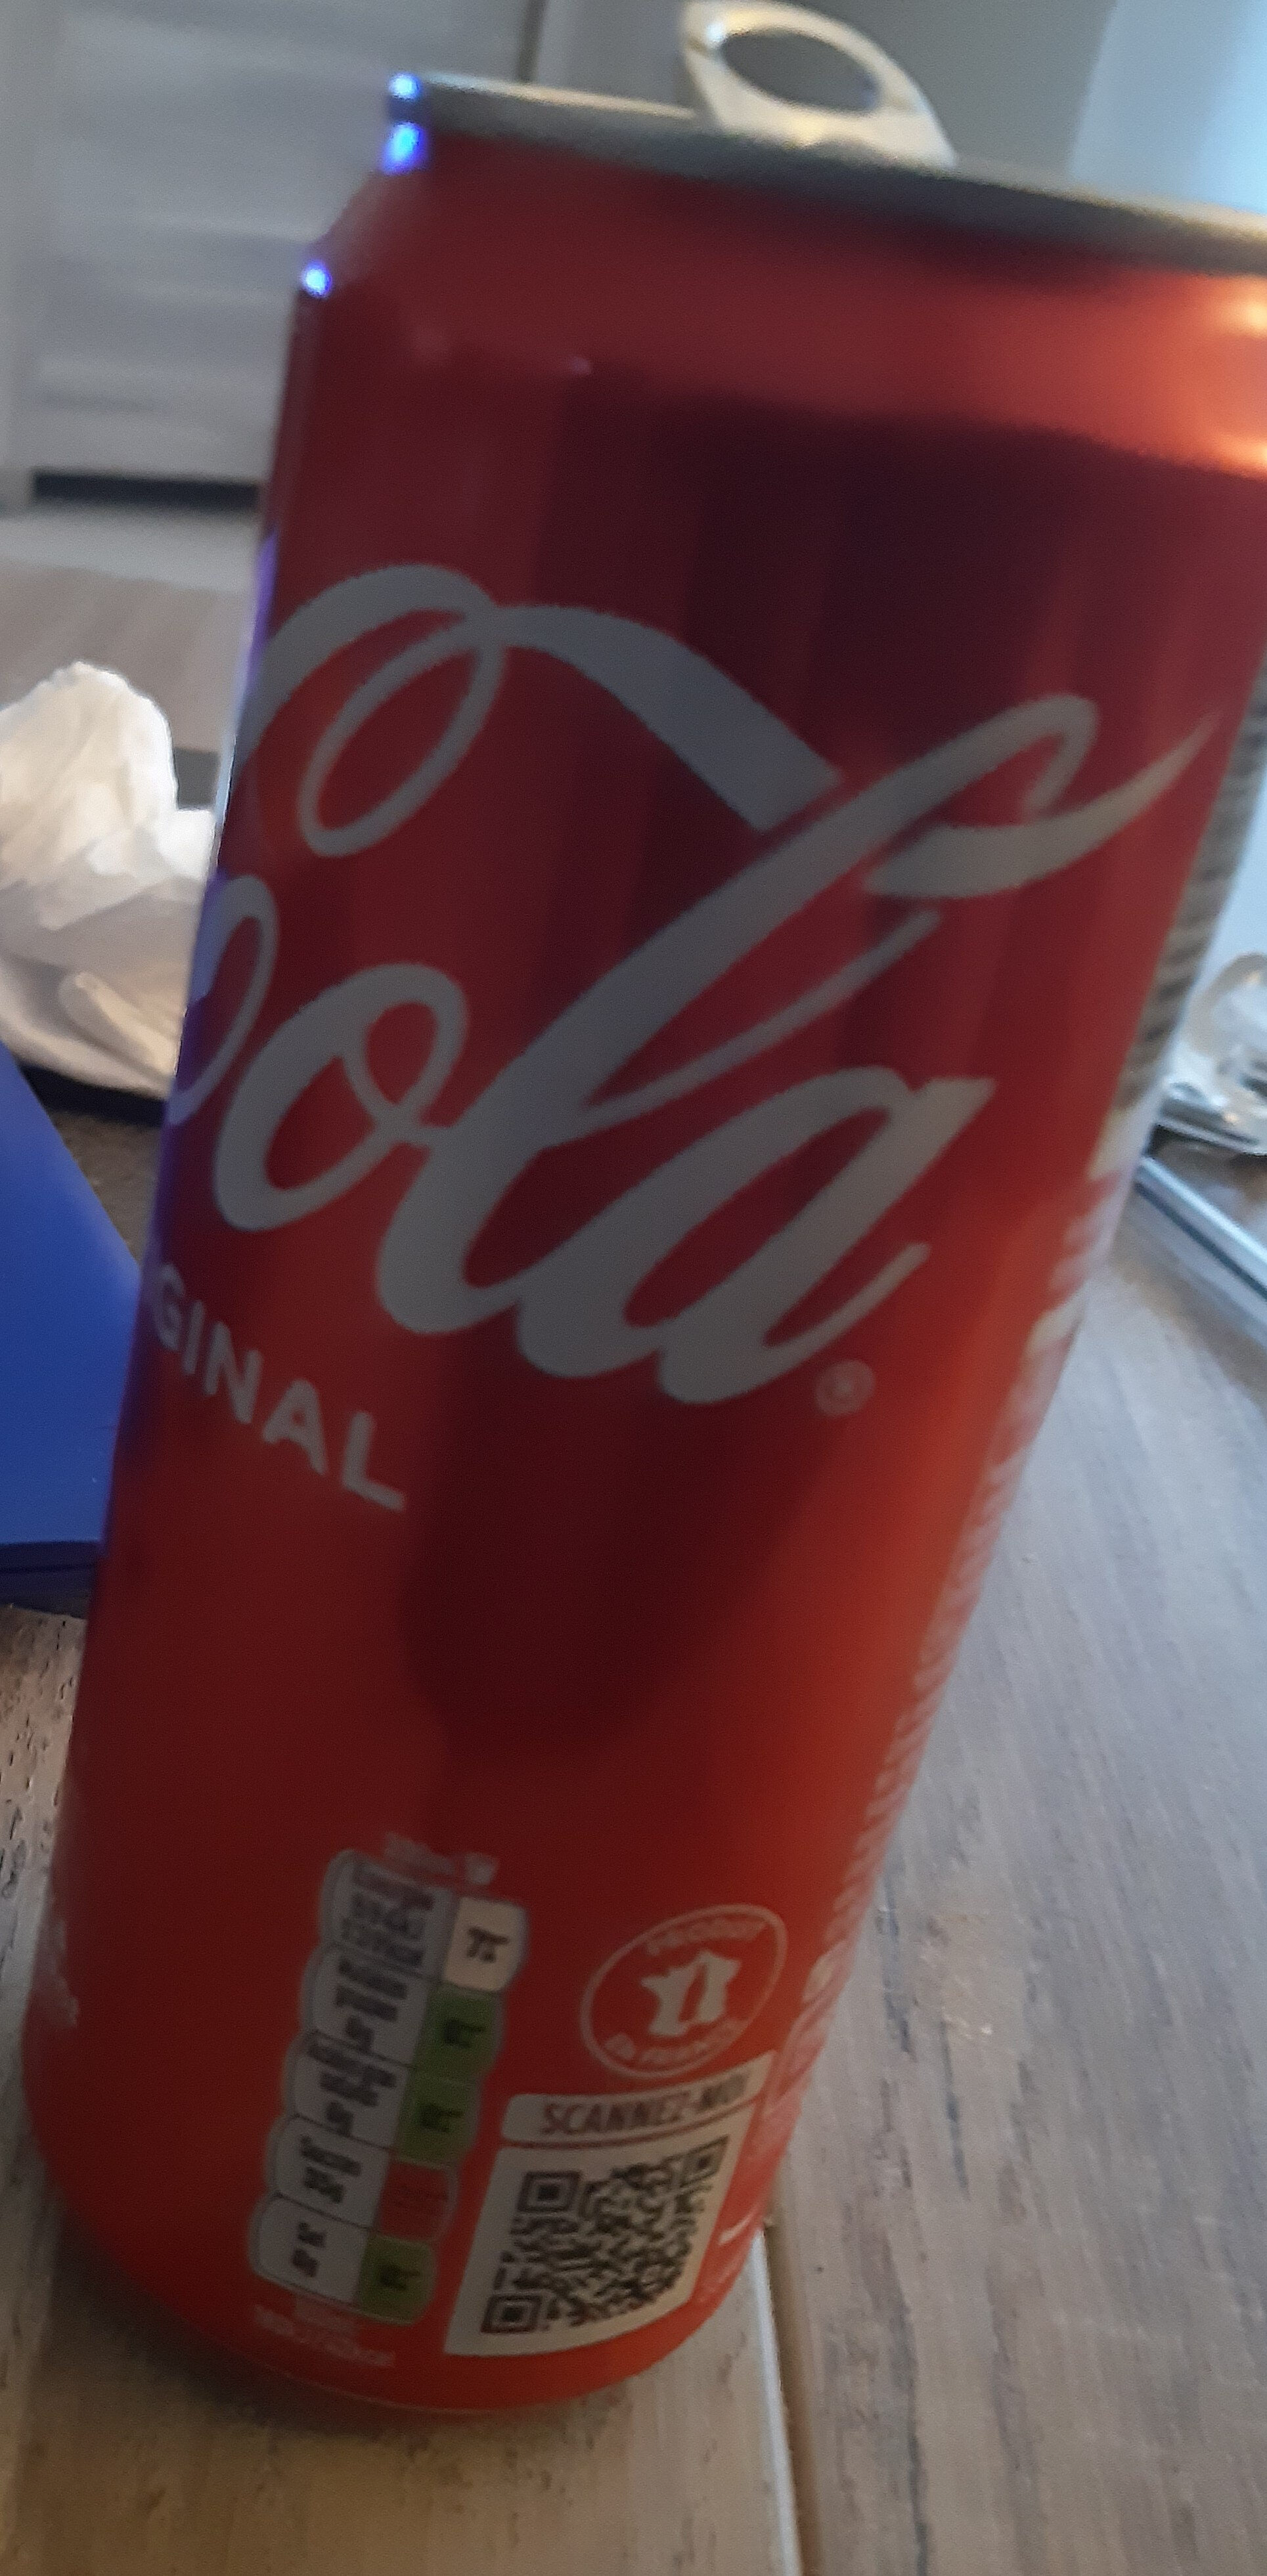 Coca-Cola goût original - Produkt - fr